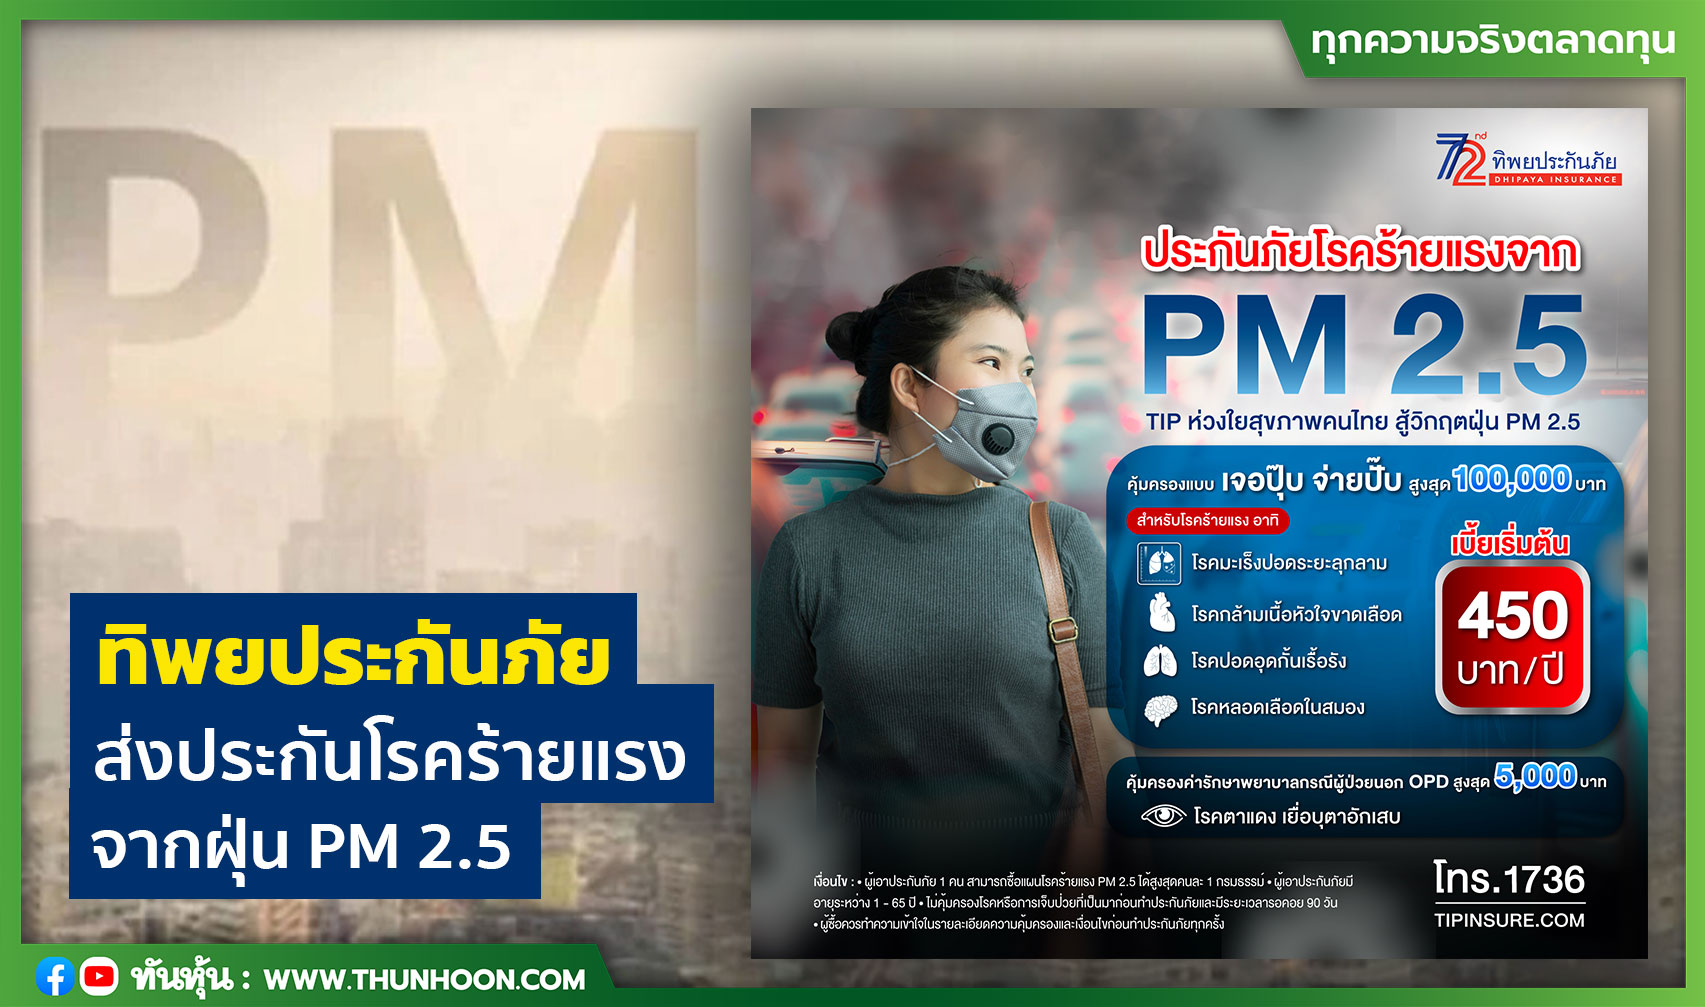 ทิพยประกันภัย ส่งประกันโรคร้ายแรง จากฝุ่น PM 2.5